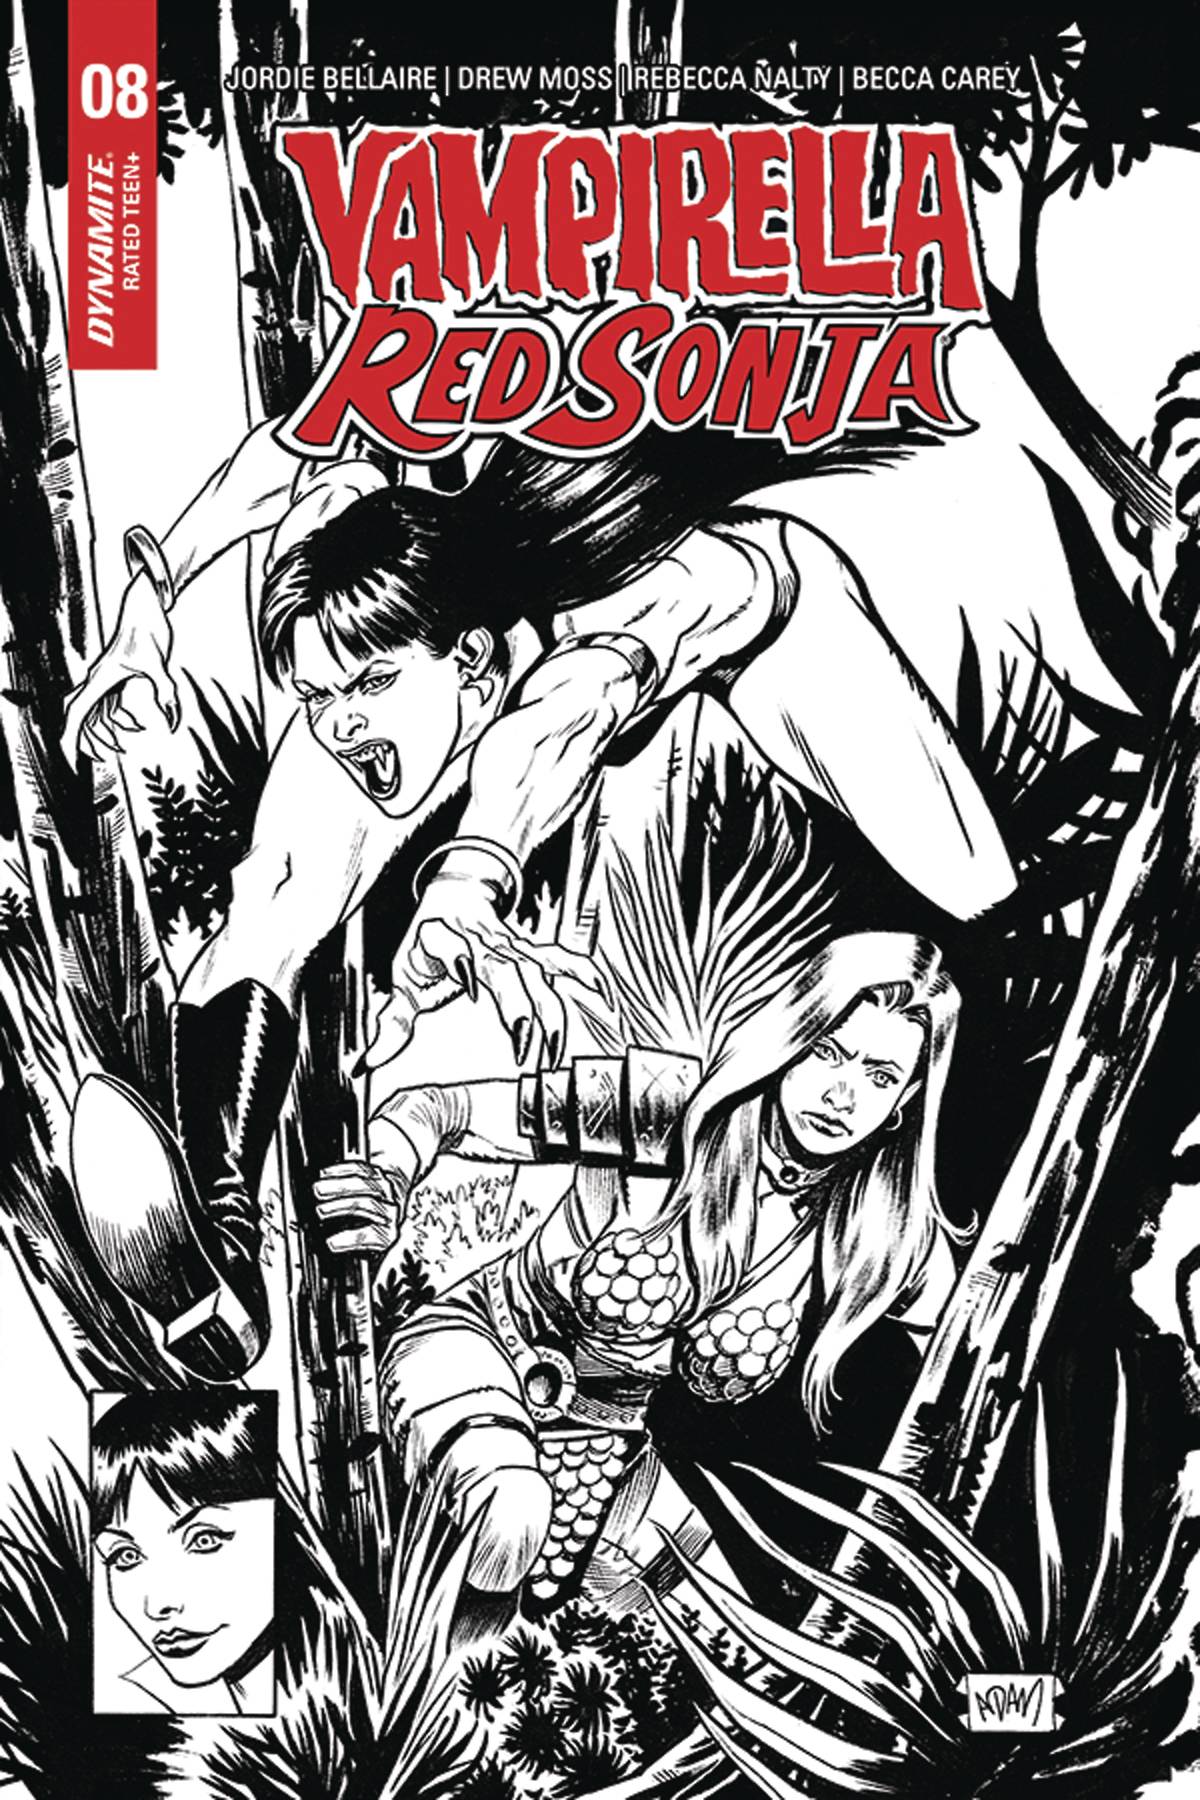 Vampirella Red Sonja #8 15 Copy Gorham Black & White Homage Incentive